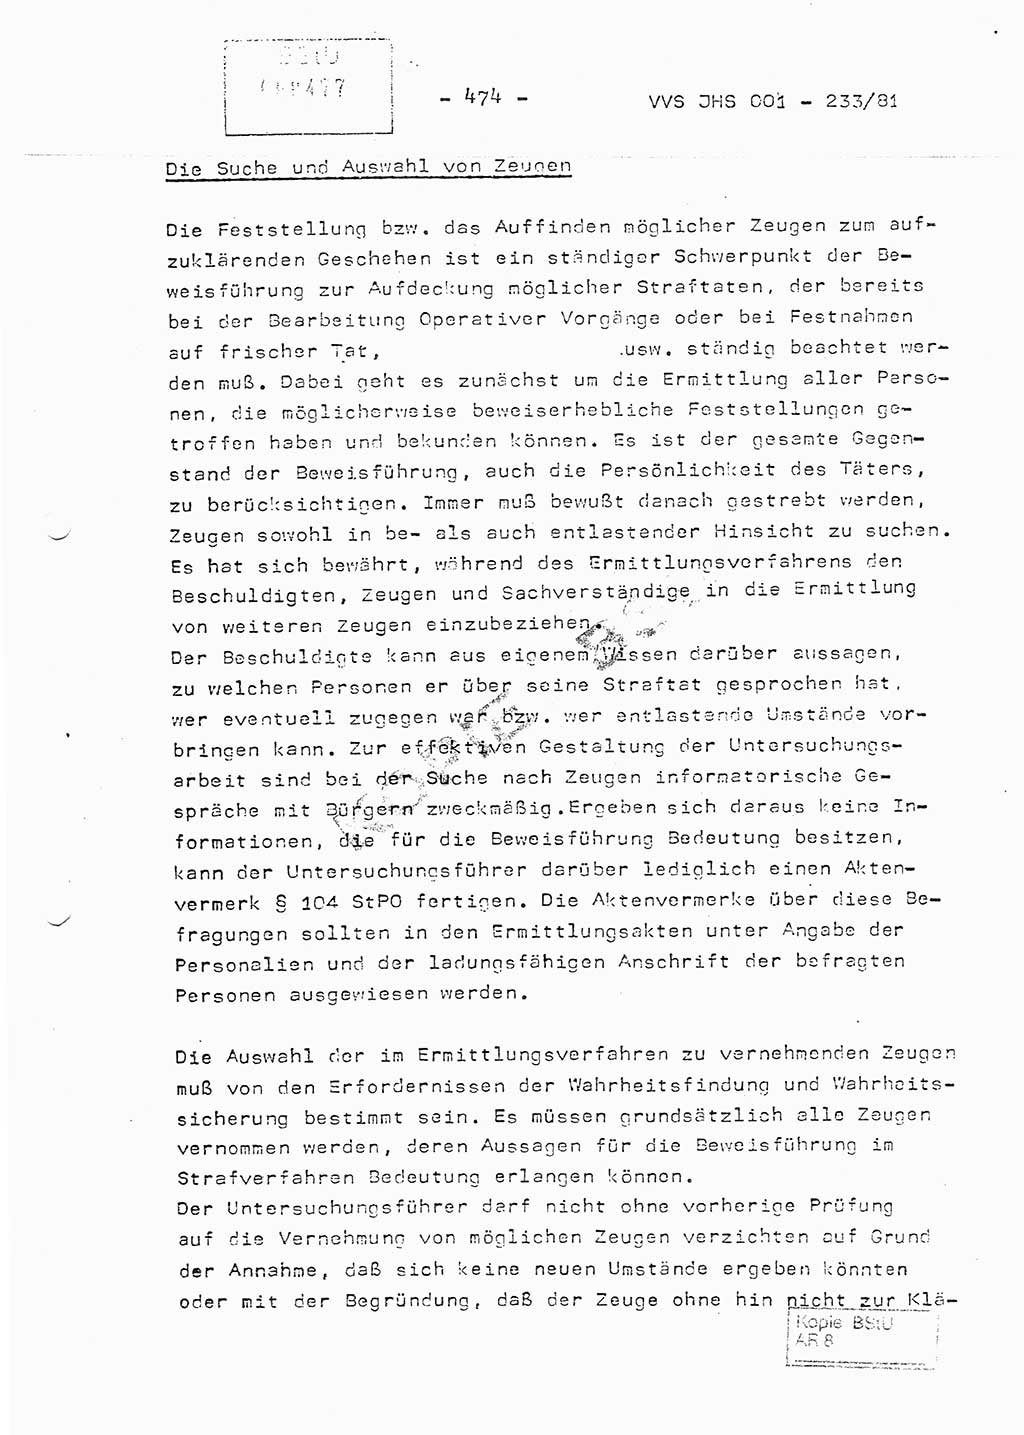 Dissertation Oberstleutnant Horst Zank (JHS), Oberstleutnant Dr. Karl-Heinz Knoblauch (JHS), Oberstleutnant Gustav-Adolf Kowalewski (HA Ⅸ), Oberstleutnant Wolfgang Plötner (HA Ⅸ), Ministerium für Staatssicherheit (MfS) [Deutsche Demokratische Republik (DDR)], Juristische Hochschule (JHS), Vertrauliche Verschlußsache (VVS) o001-233/81, Potsdam 1981, Blatt 474 (Diss. MfS DDR JHS VVS o001-233/81 1981, Bl. 474)